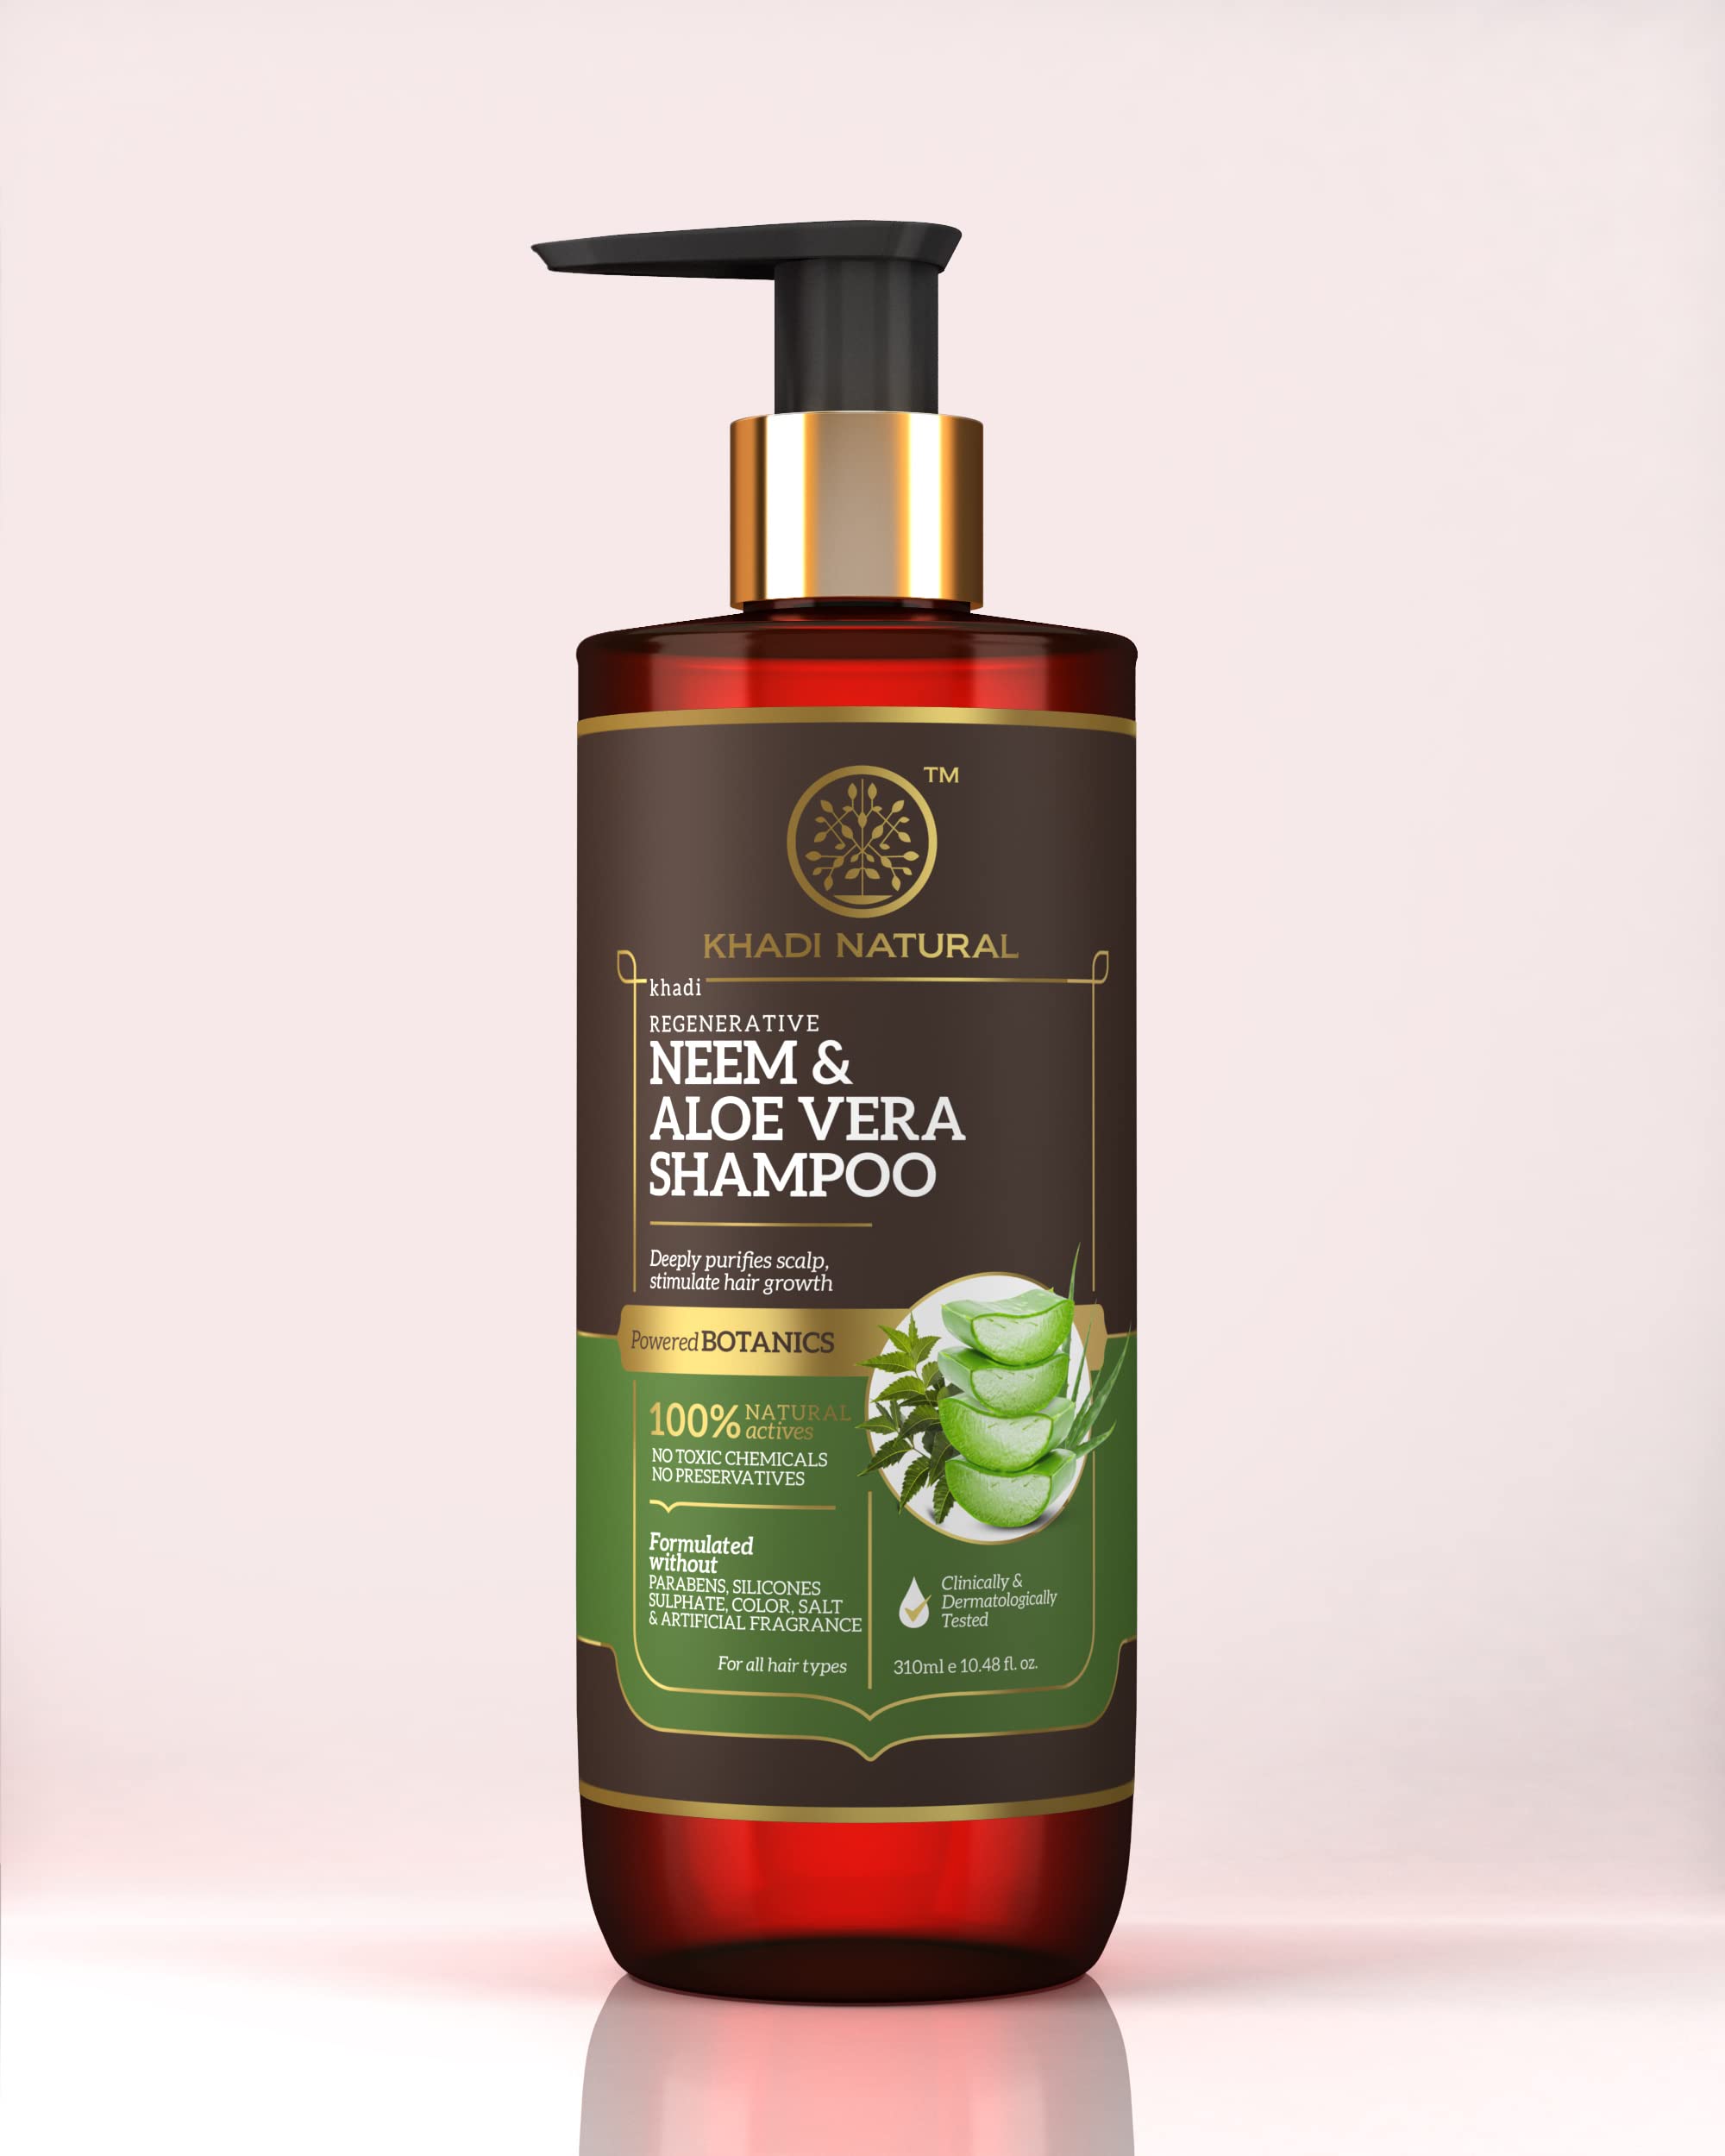 szampon khadi z neem i aloe vera nie zawiera silikonu